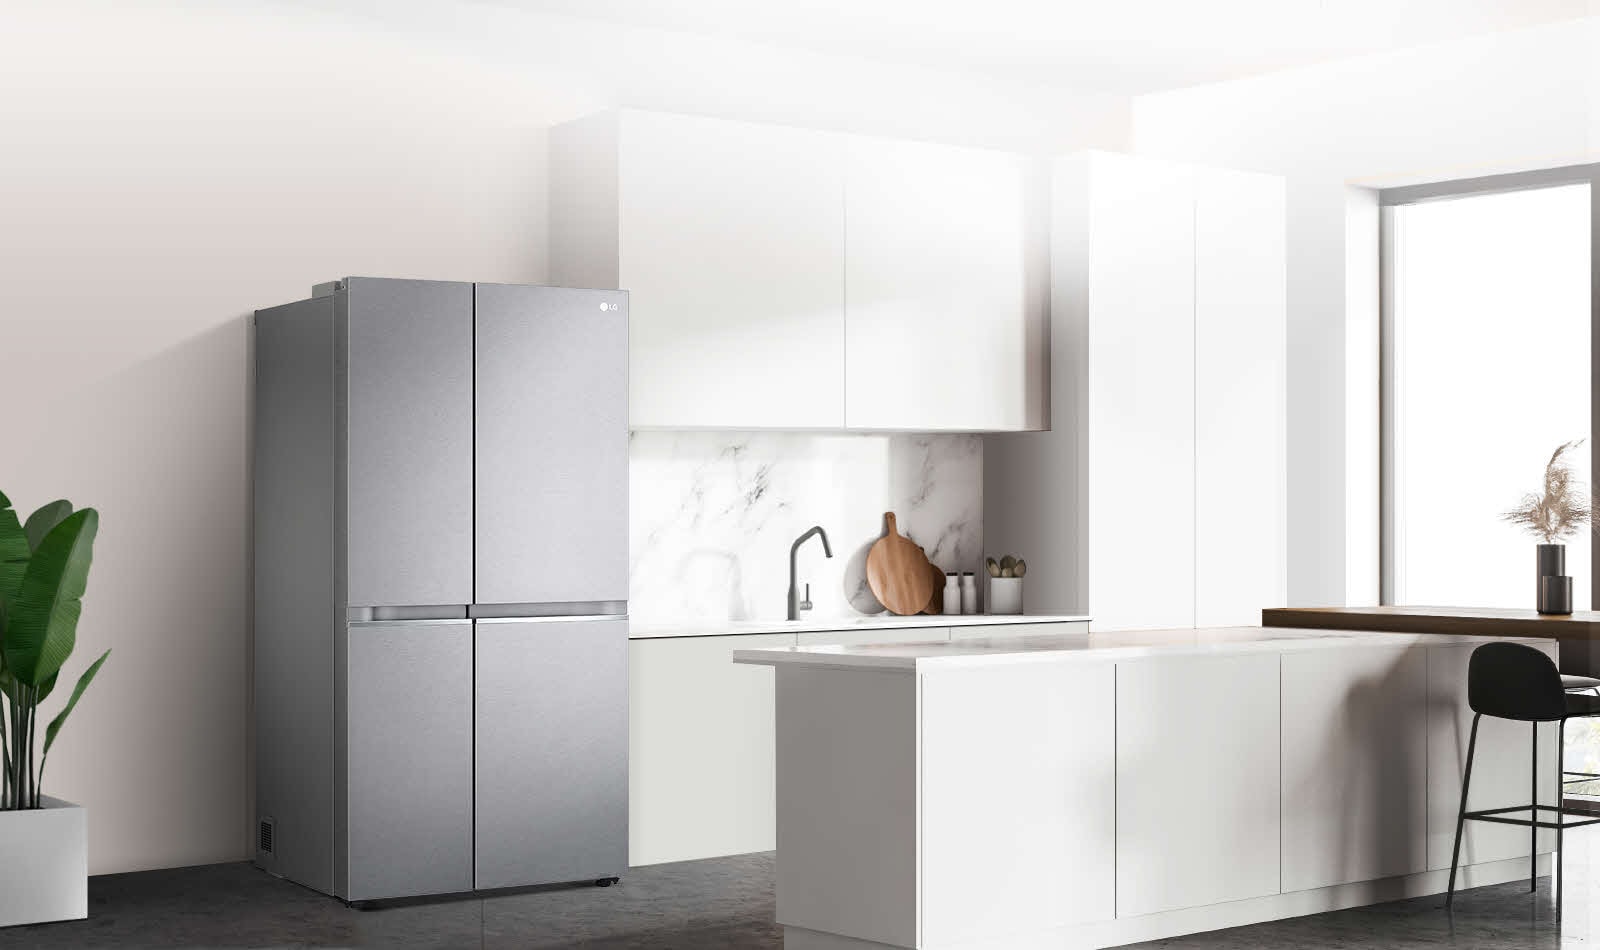 Virtuvės, kurioje pastatytas juodas „InstaView“ šaldytuvas, vaizdas iš šono.